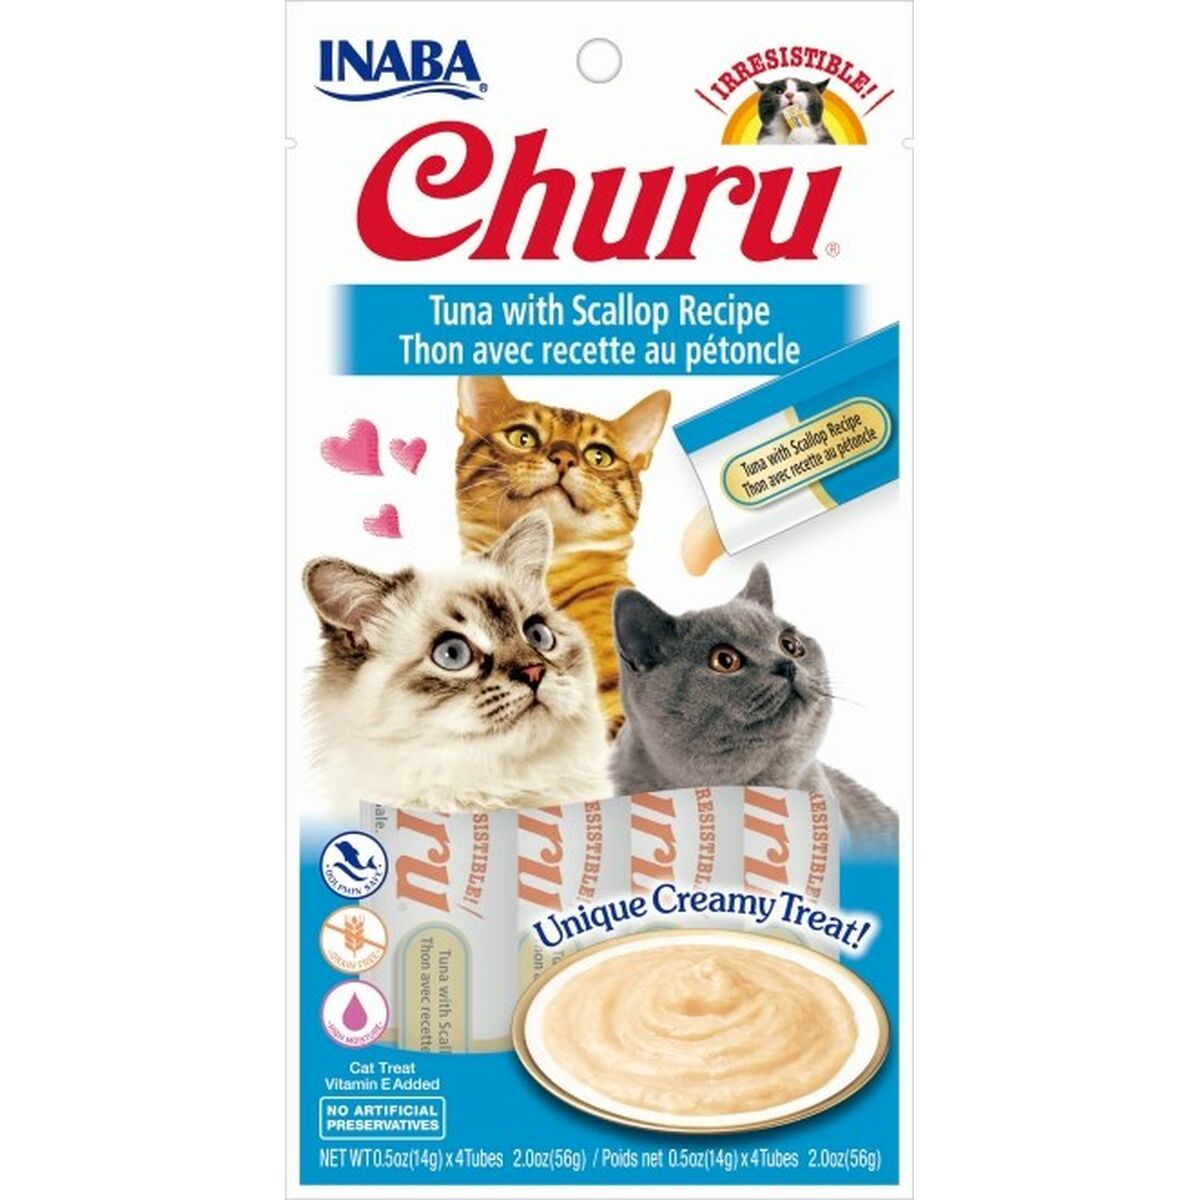 Snack for Cats Inaba Churu Tuna 4 x 14 g